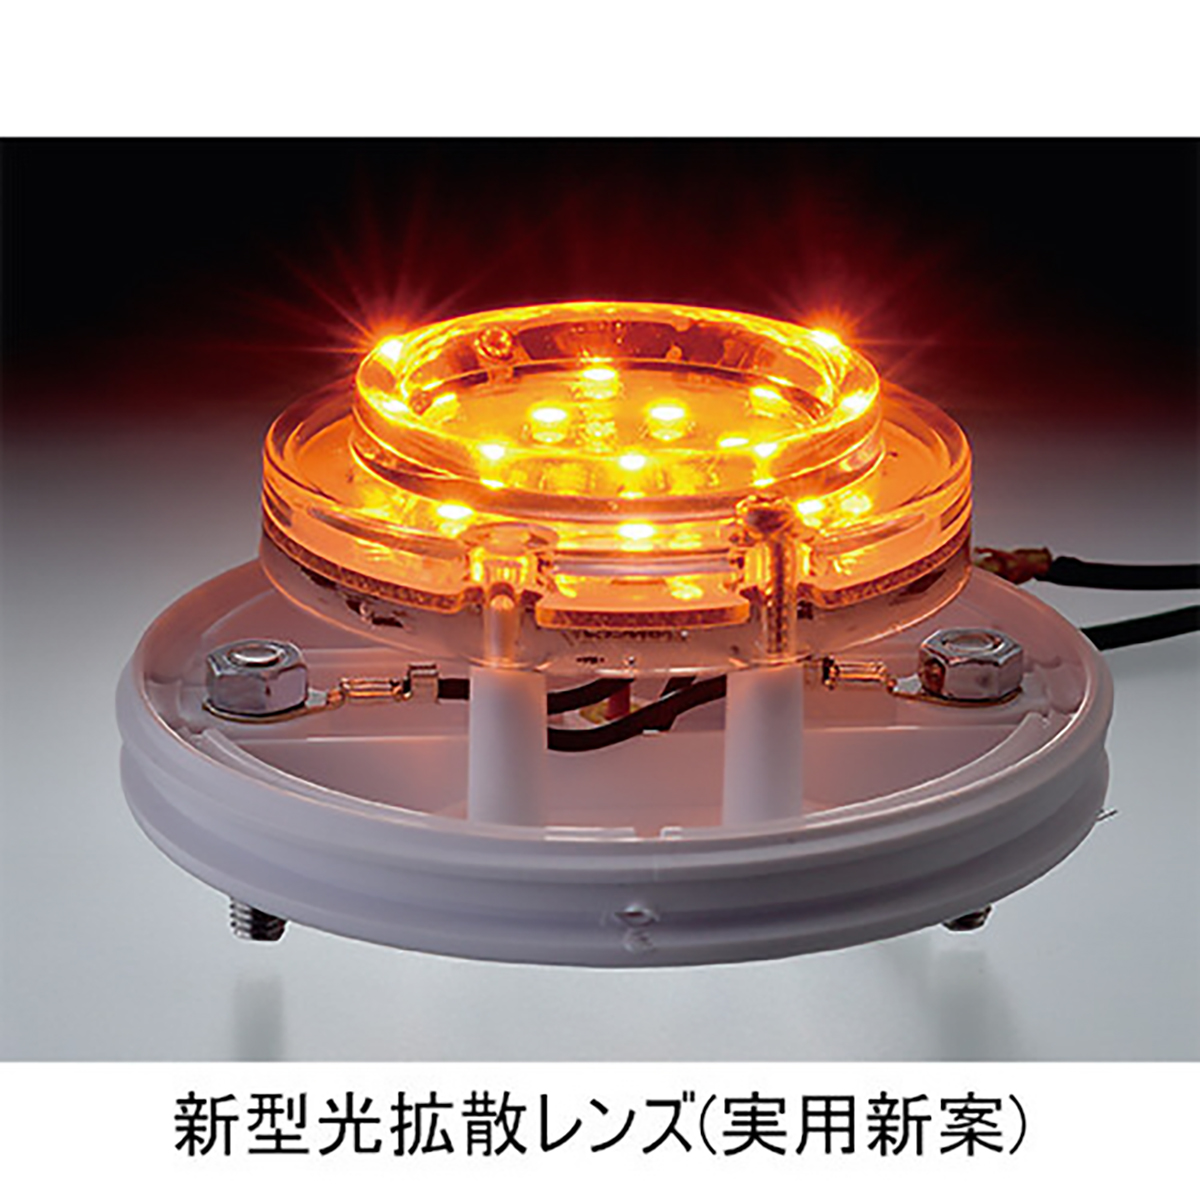 マーカー ランプ LED シリコンレンズ オレンジ DC12/DC24V 防水